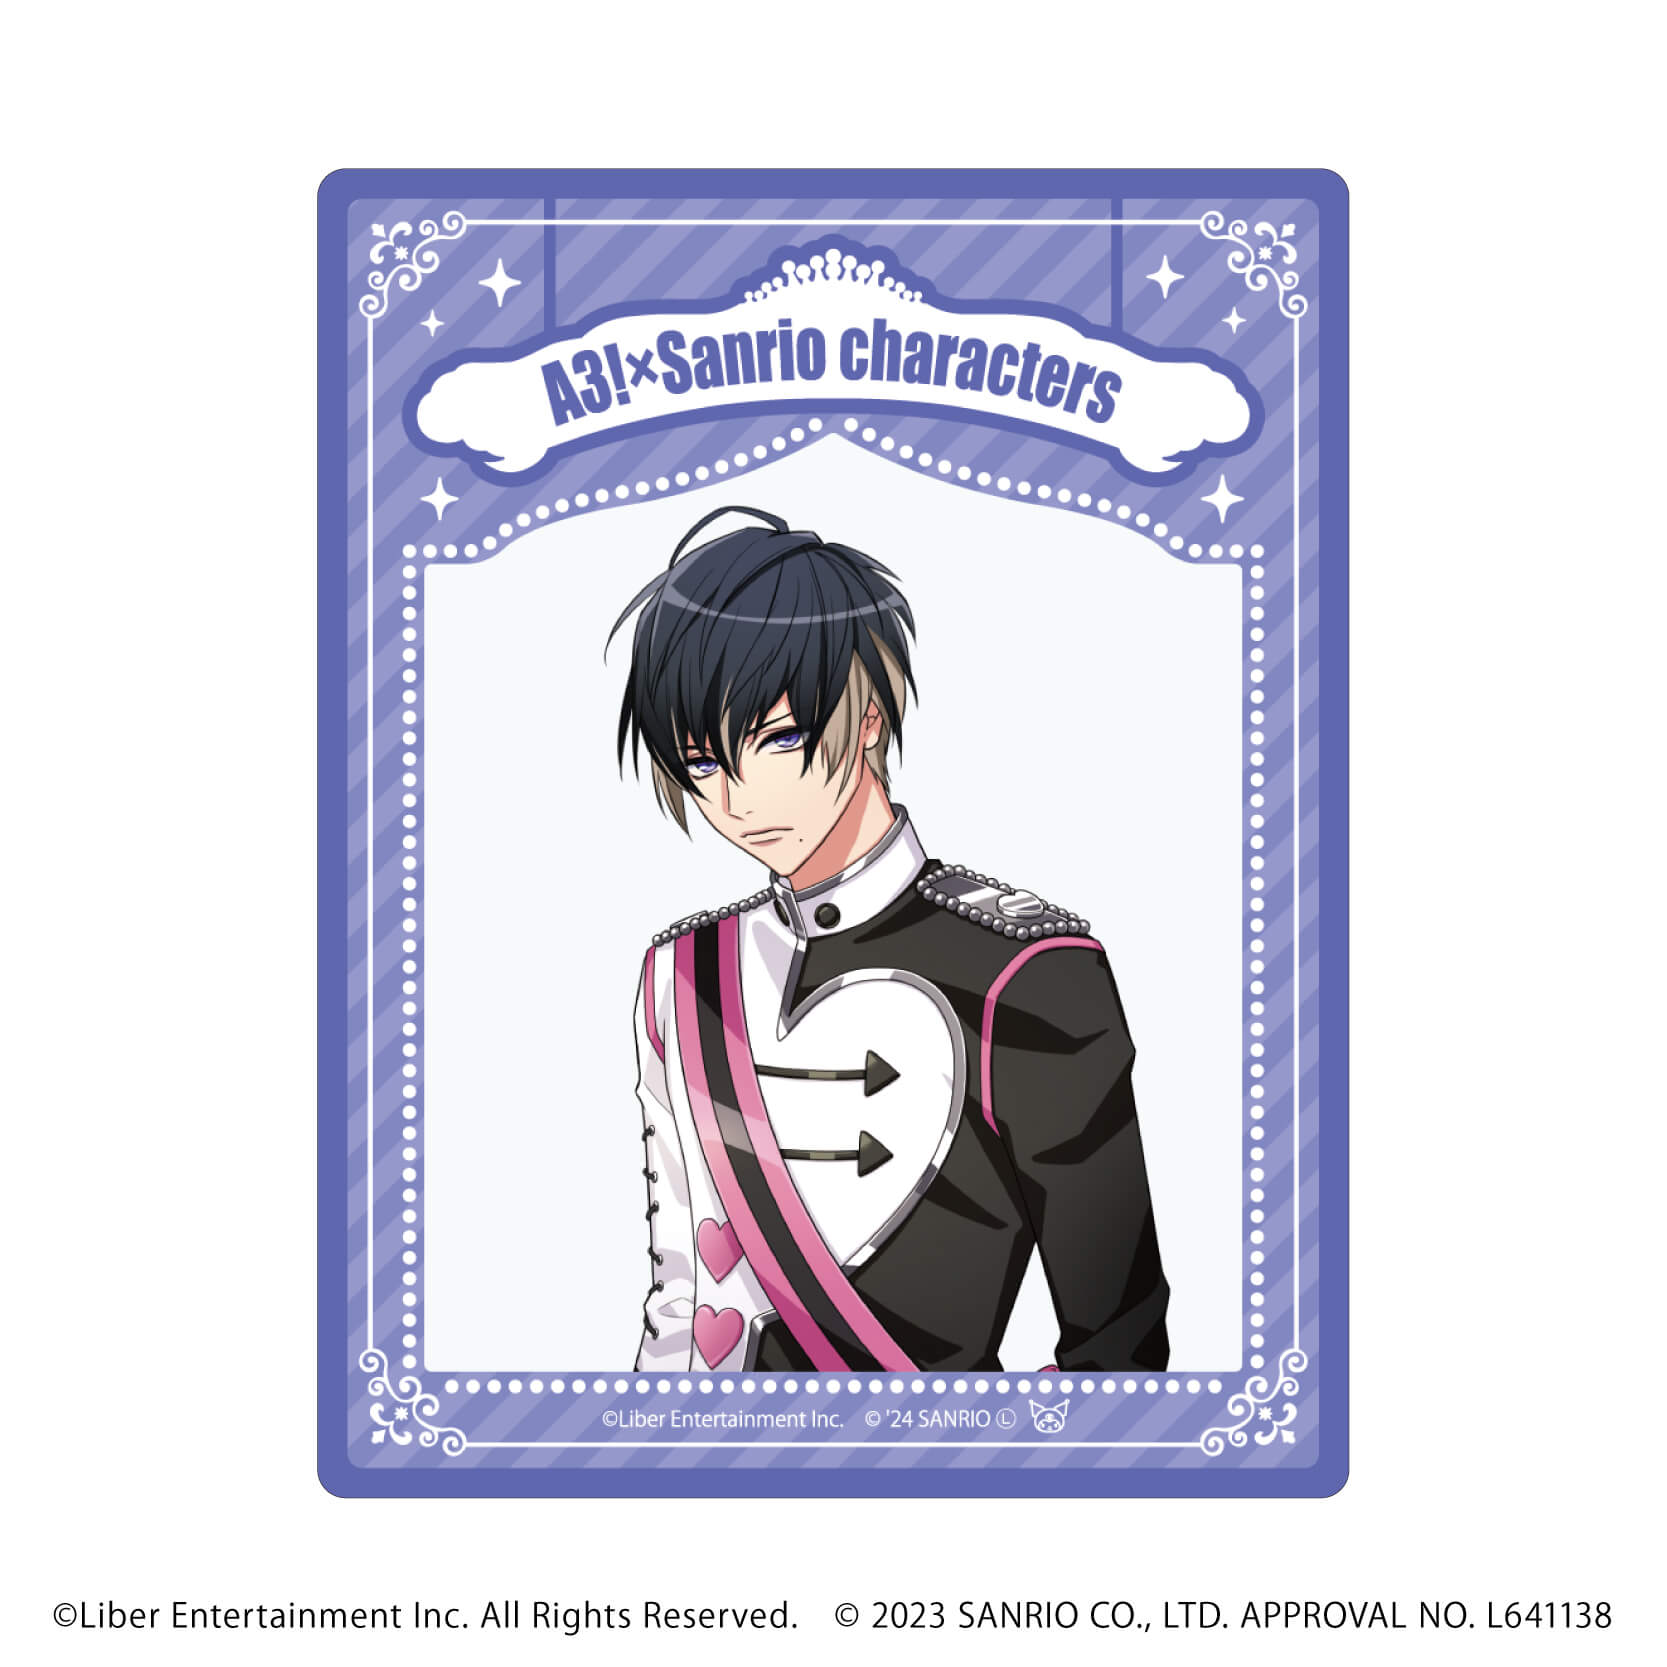 アクリルカード「A3!×Sanrio characters」07/S＆S コンプリートBOX(全12種)(公式イラスト)